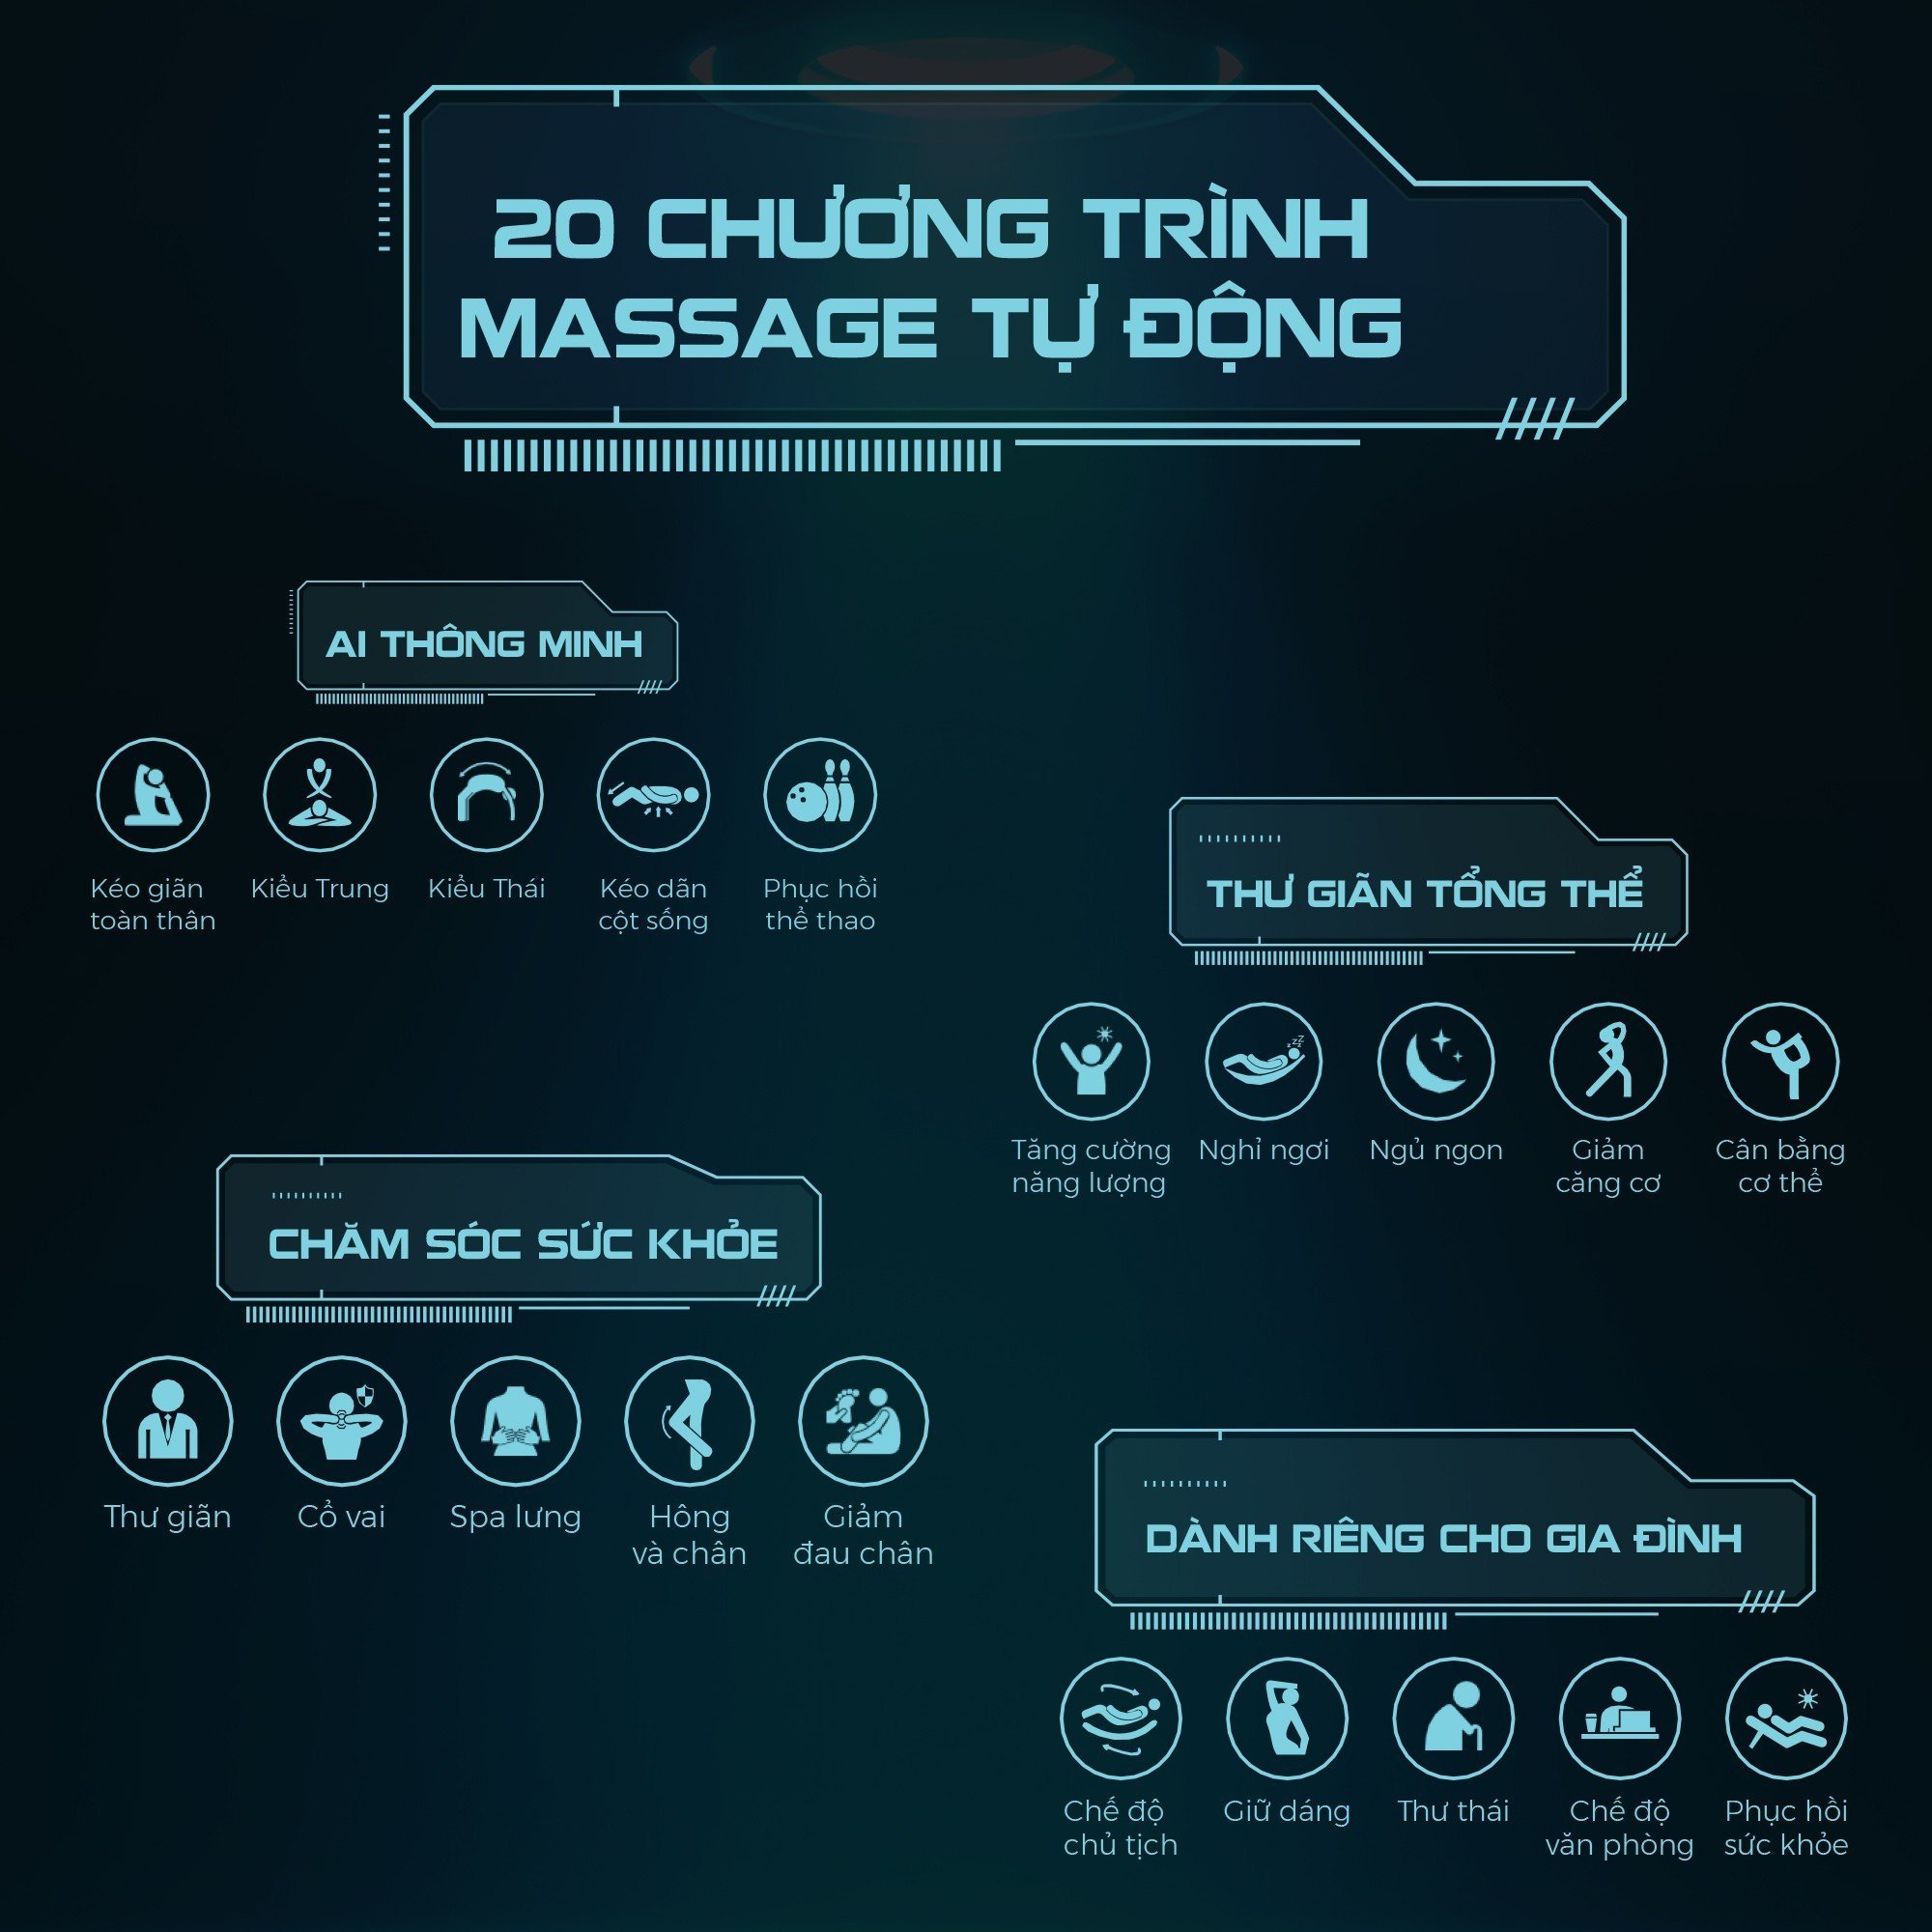 20 chương trình massage tự động, phù hợp cho mọi đối tượng người dùng